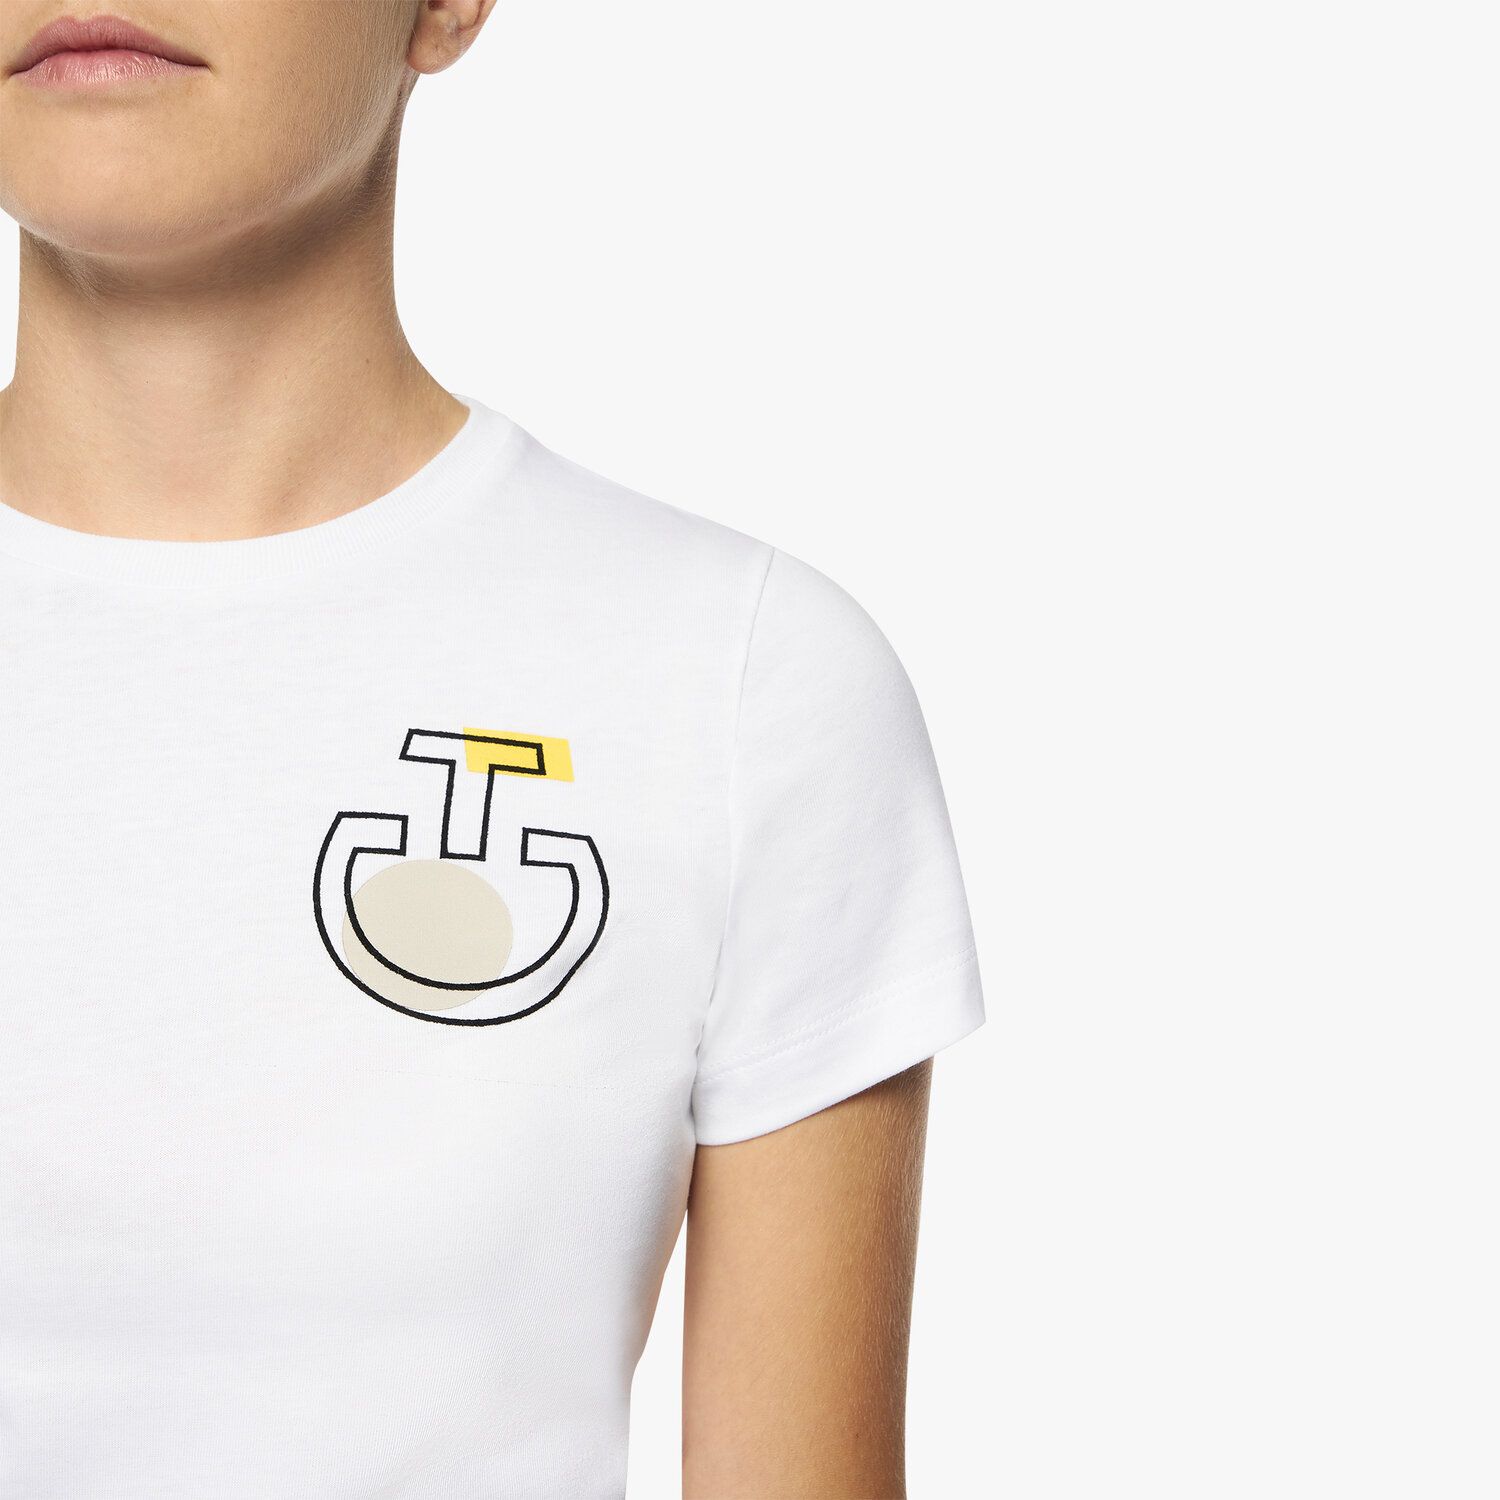 Cavalleria Toscana Girls’ cotton jersey t-shirt WHITE-2